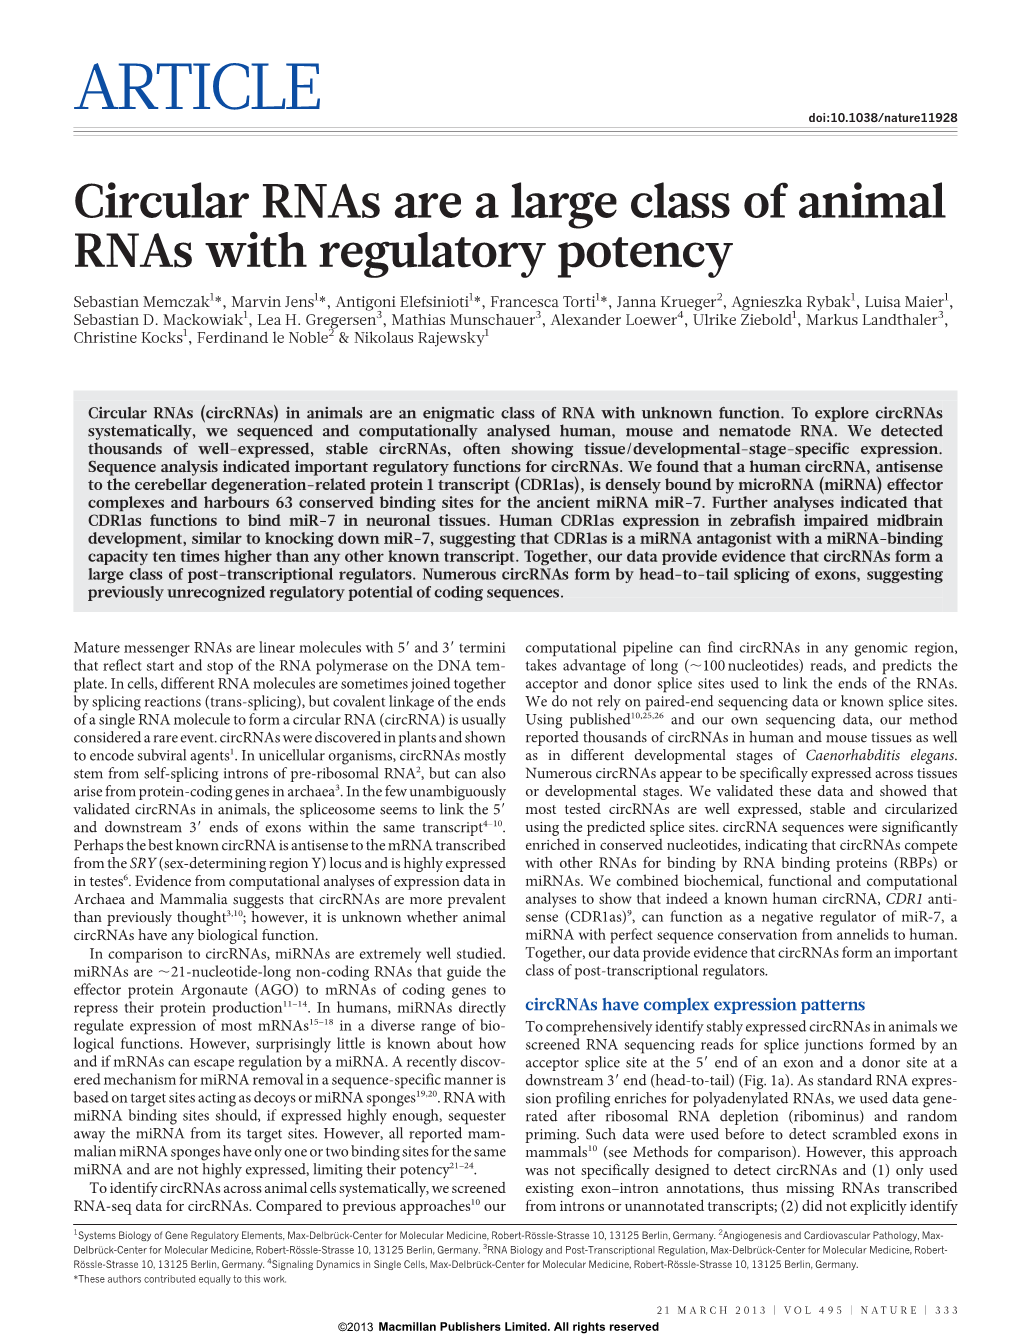 Circular Rnas Are a Large Class of Animal Rnas with Regulatory Potency